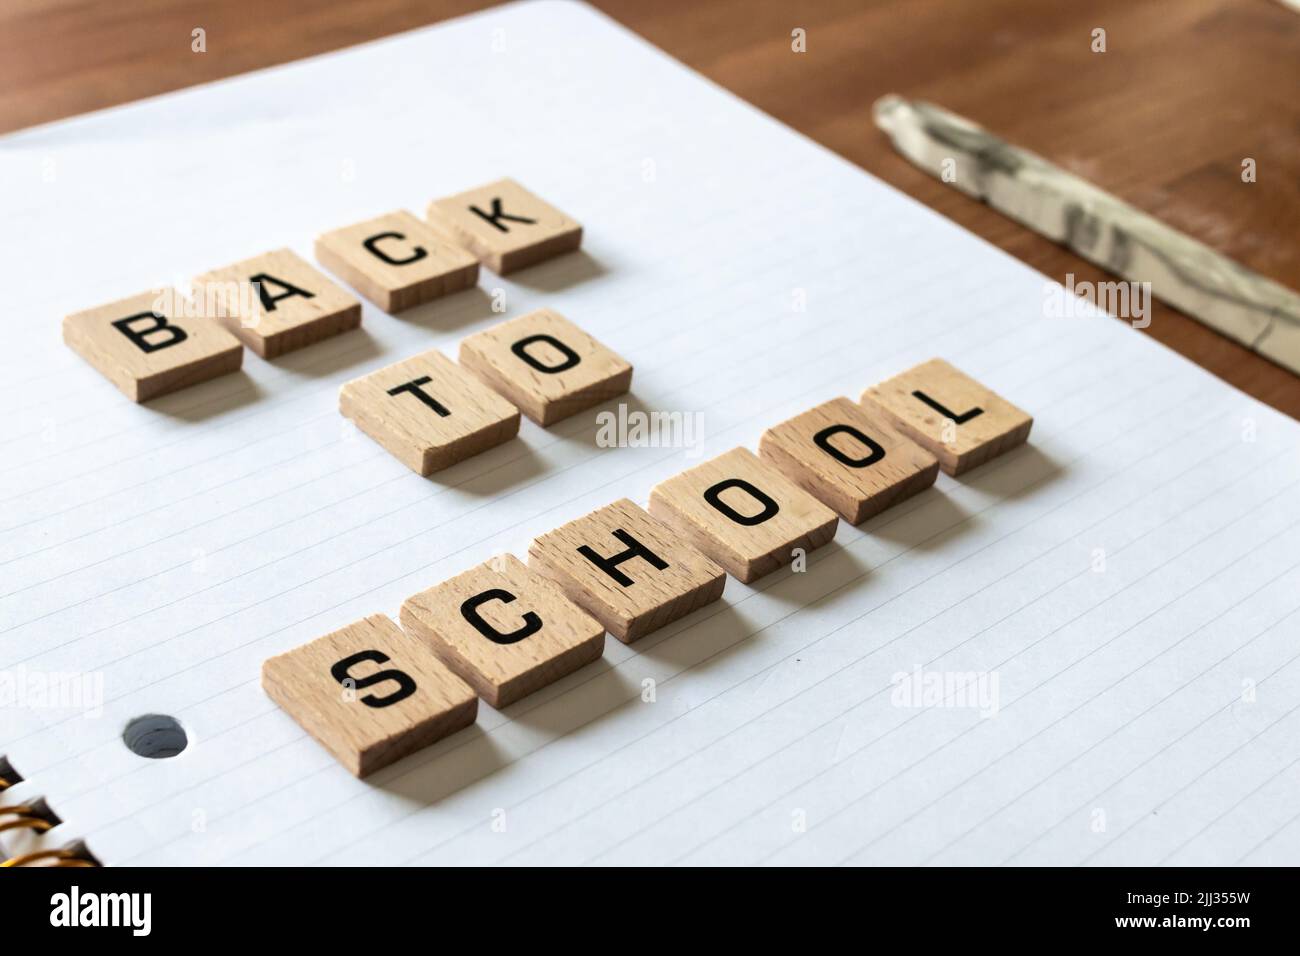 Le lettere di legno spiegano "ritorno a scuola" su un blocco note bianco rivestito accanto a una mela rossa e a una penna. Superficie della scrivania in legno duro. Apprendimento. Foto Stock